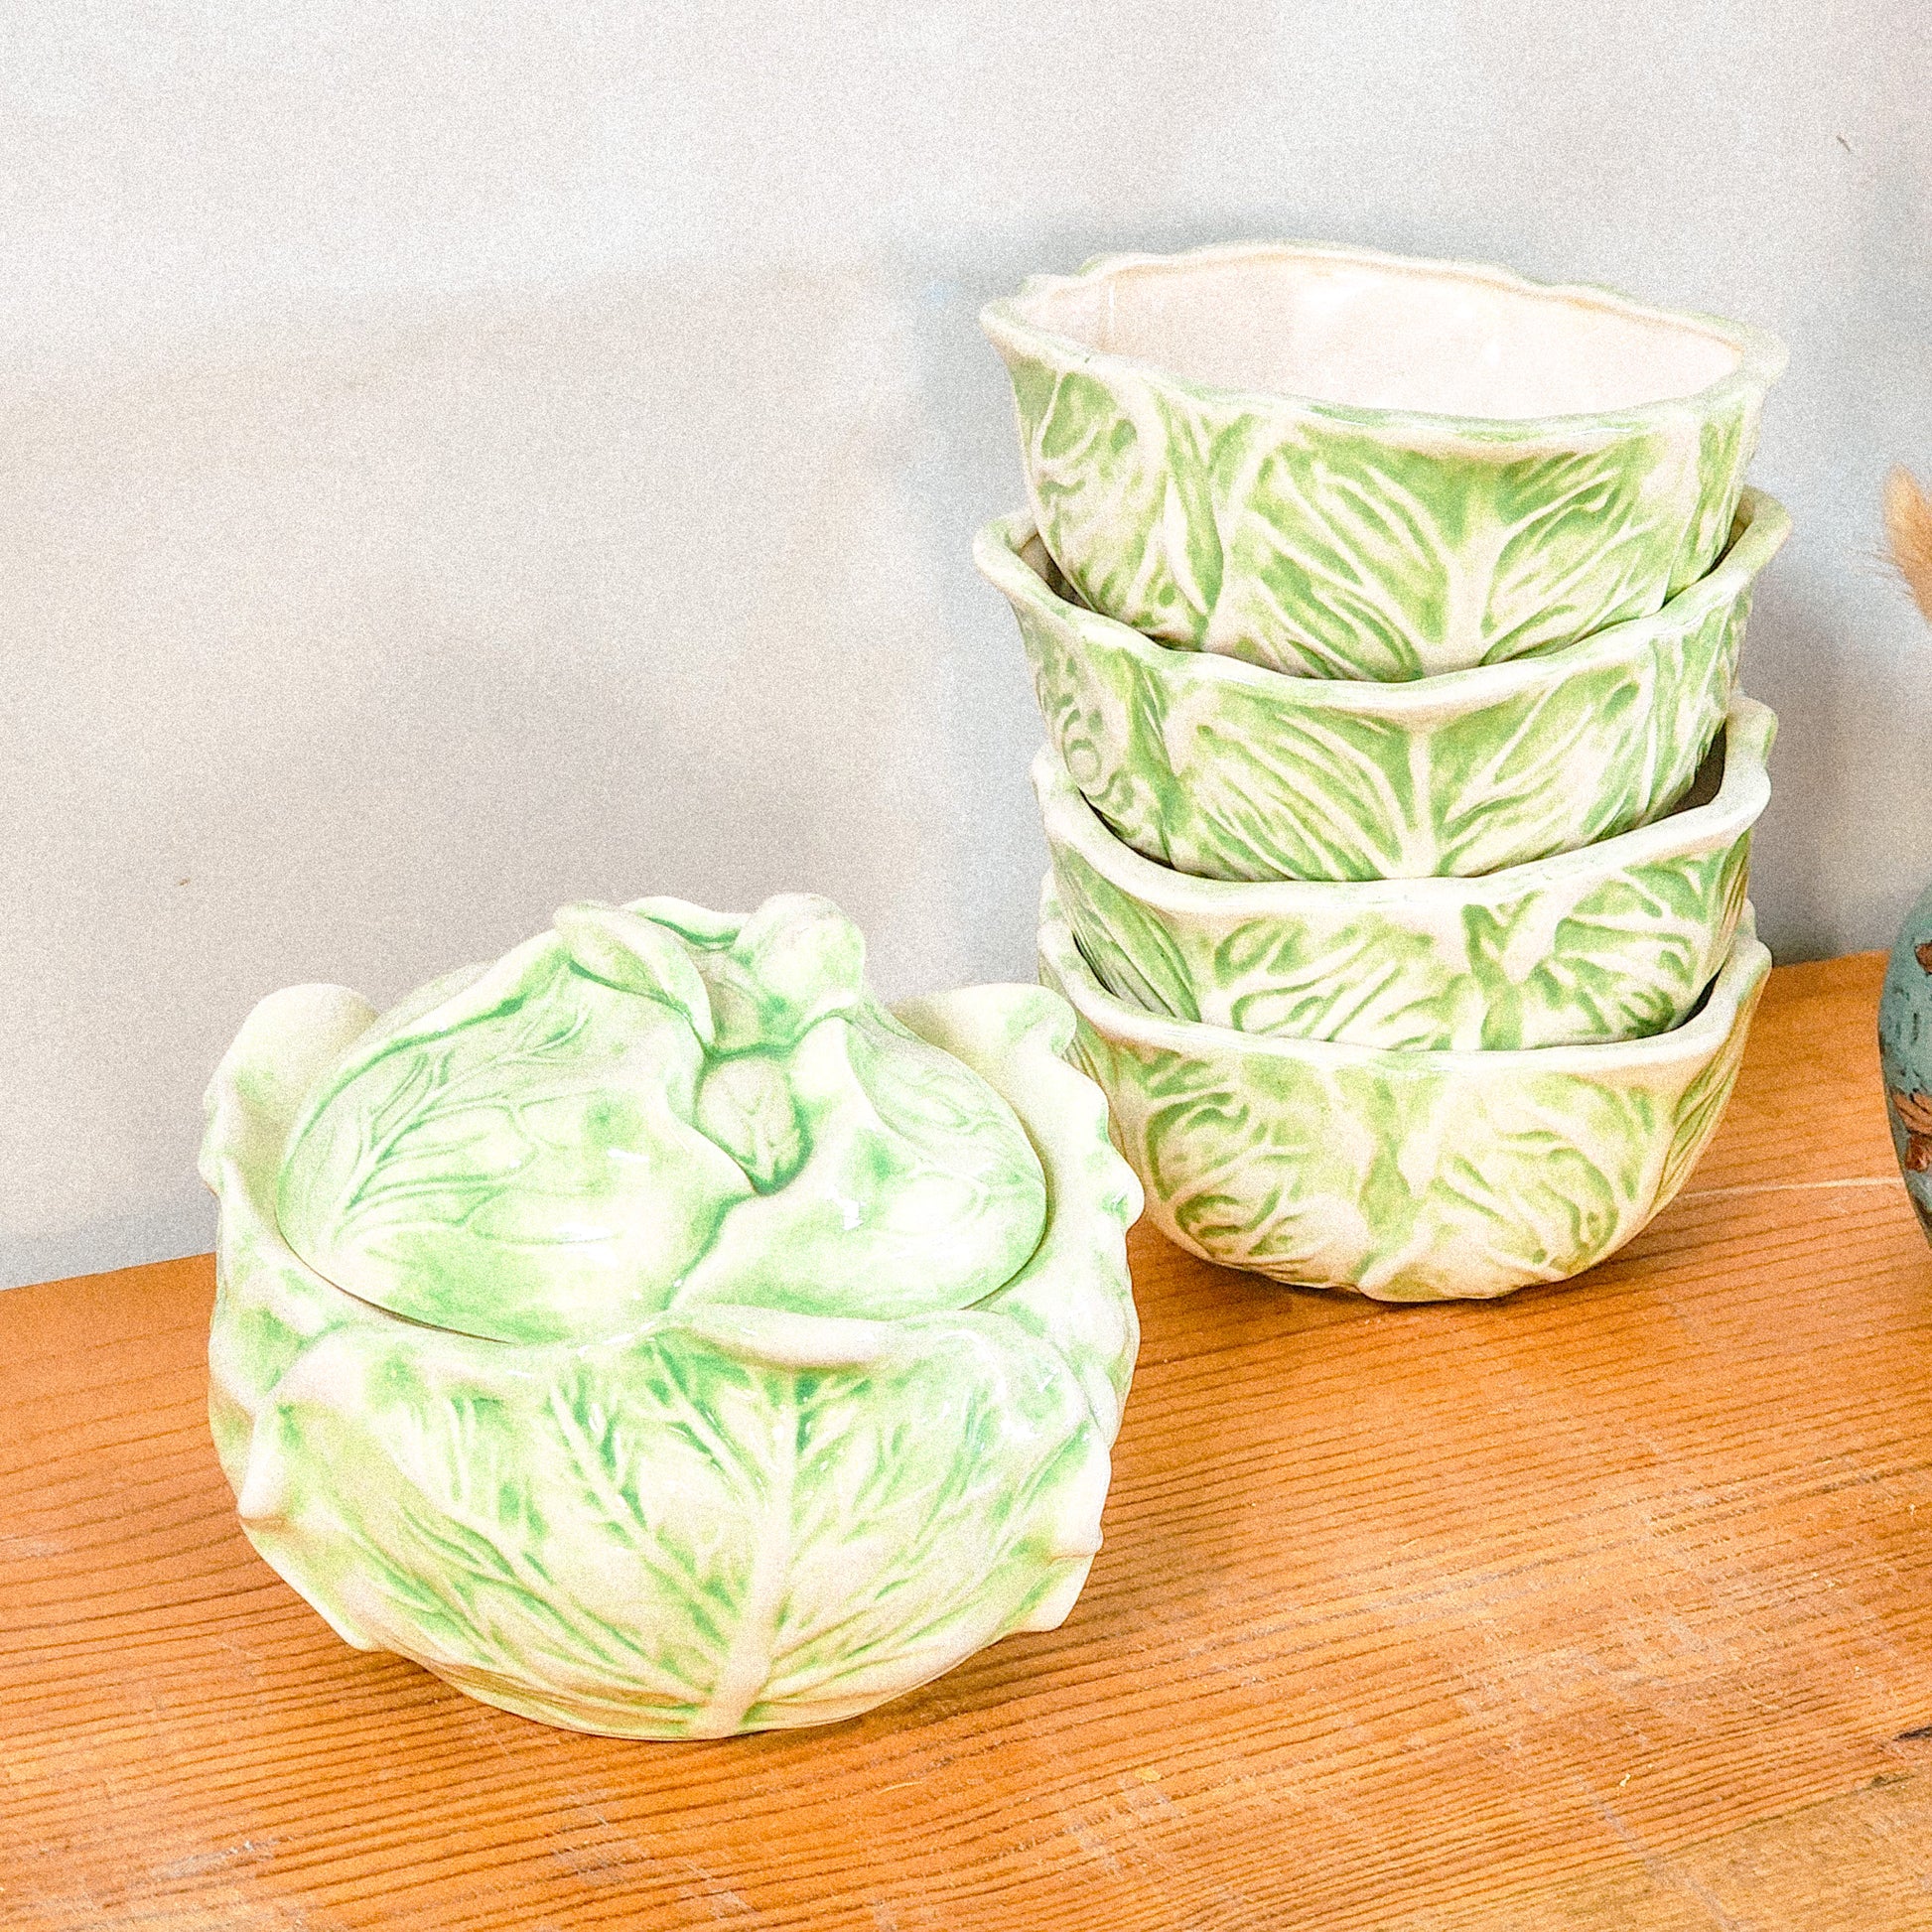 Vintage Ceramic Cabbage Bowl Set - Reclaimed Mt. Goods